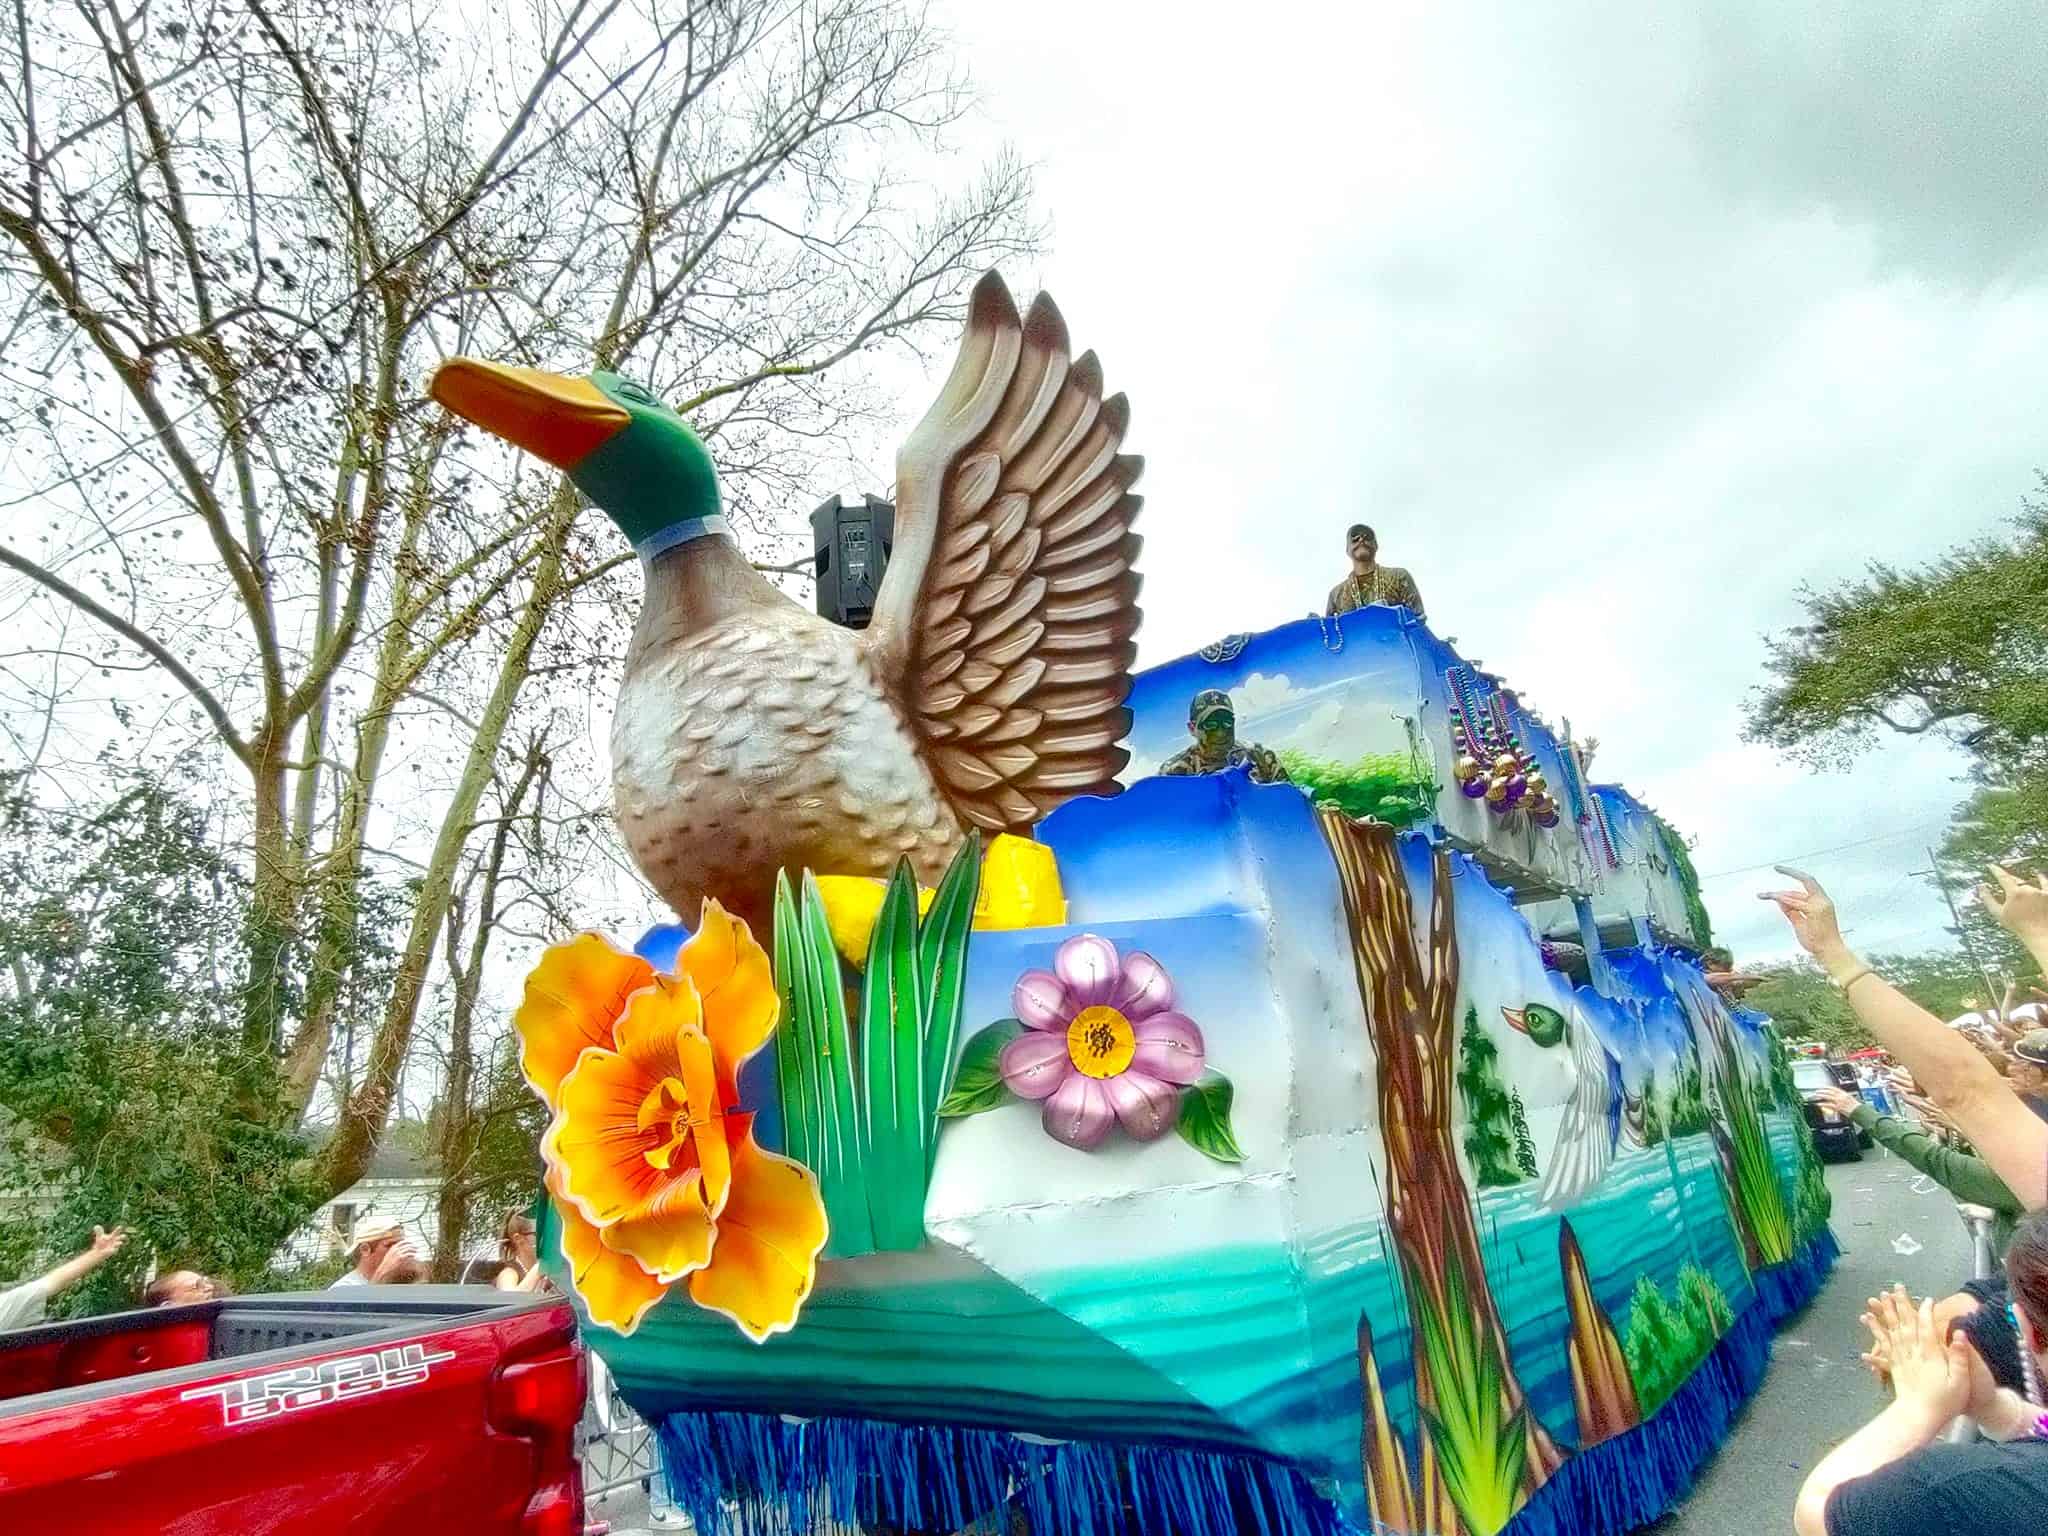 Mardi gras float duck in Louisiana